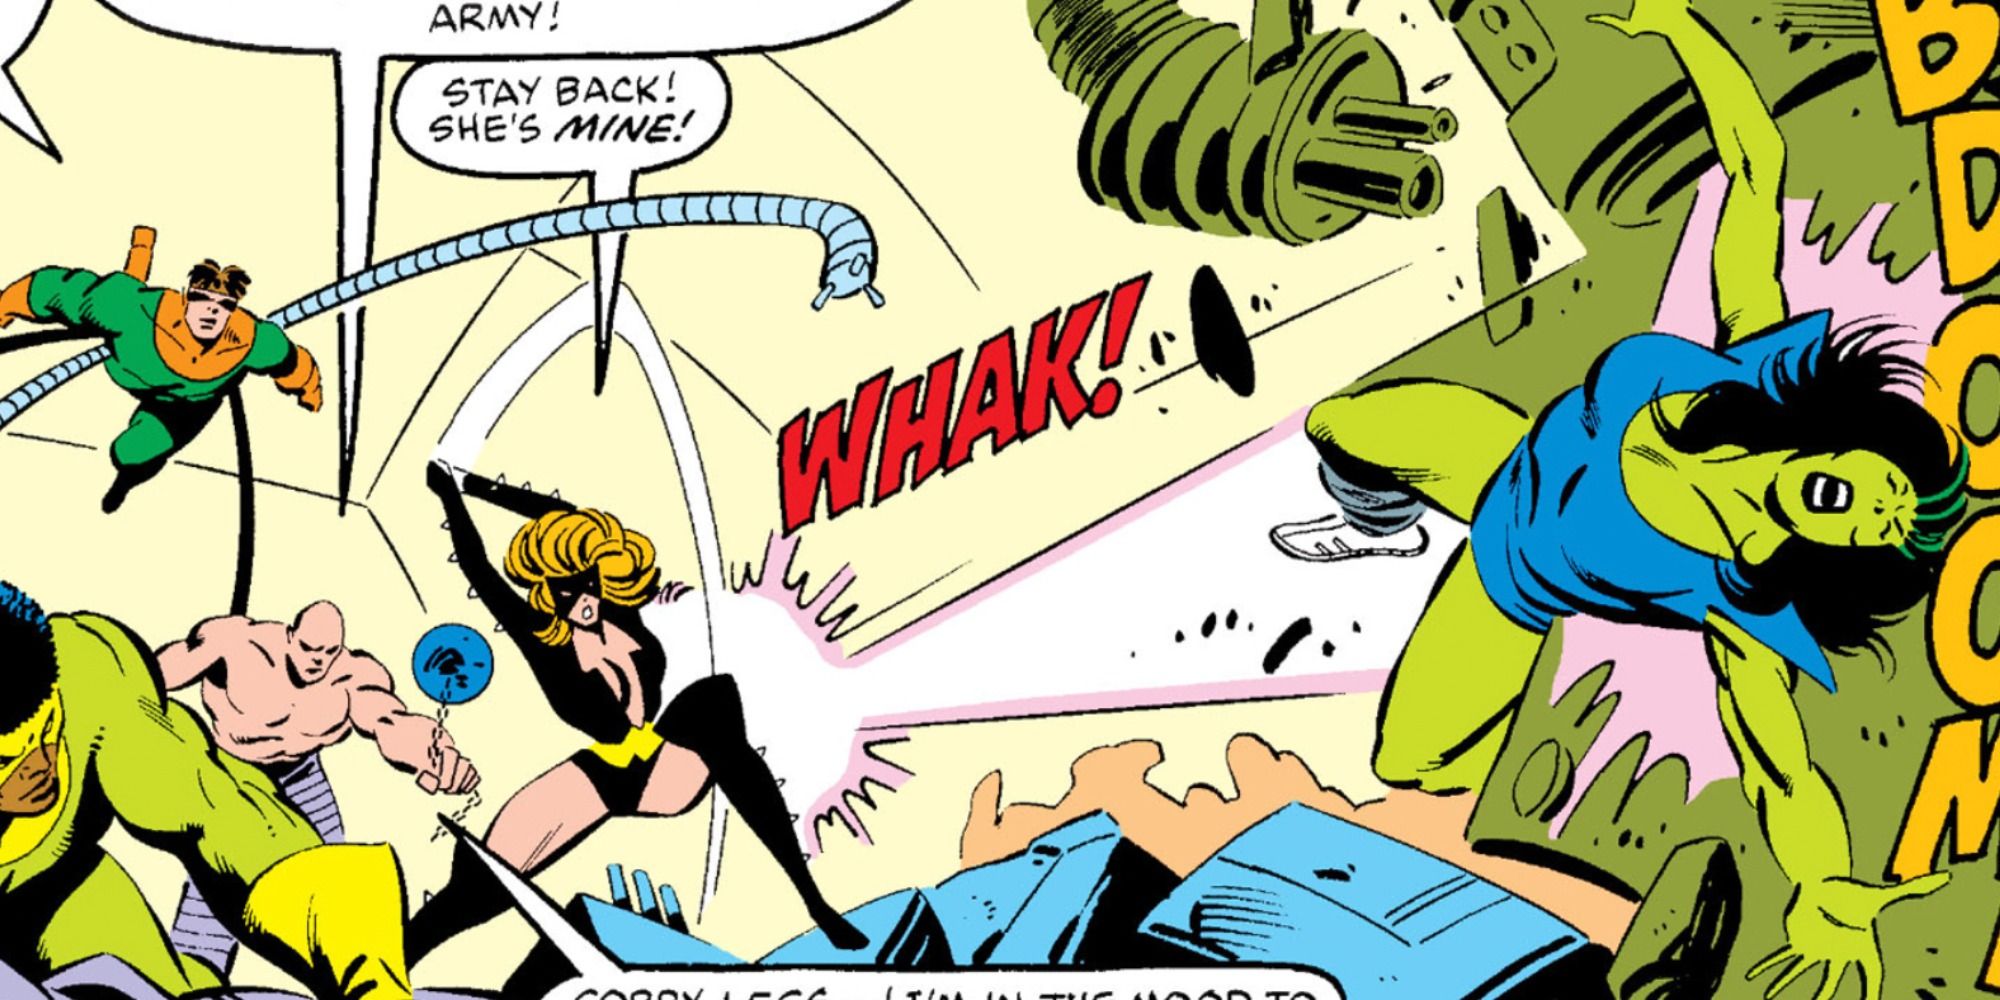 Titania attacks She-Hulk in Marvel Comics.